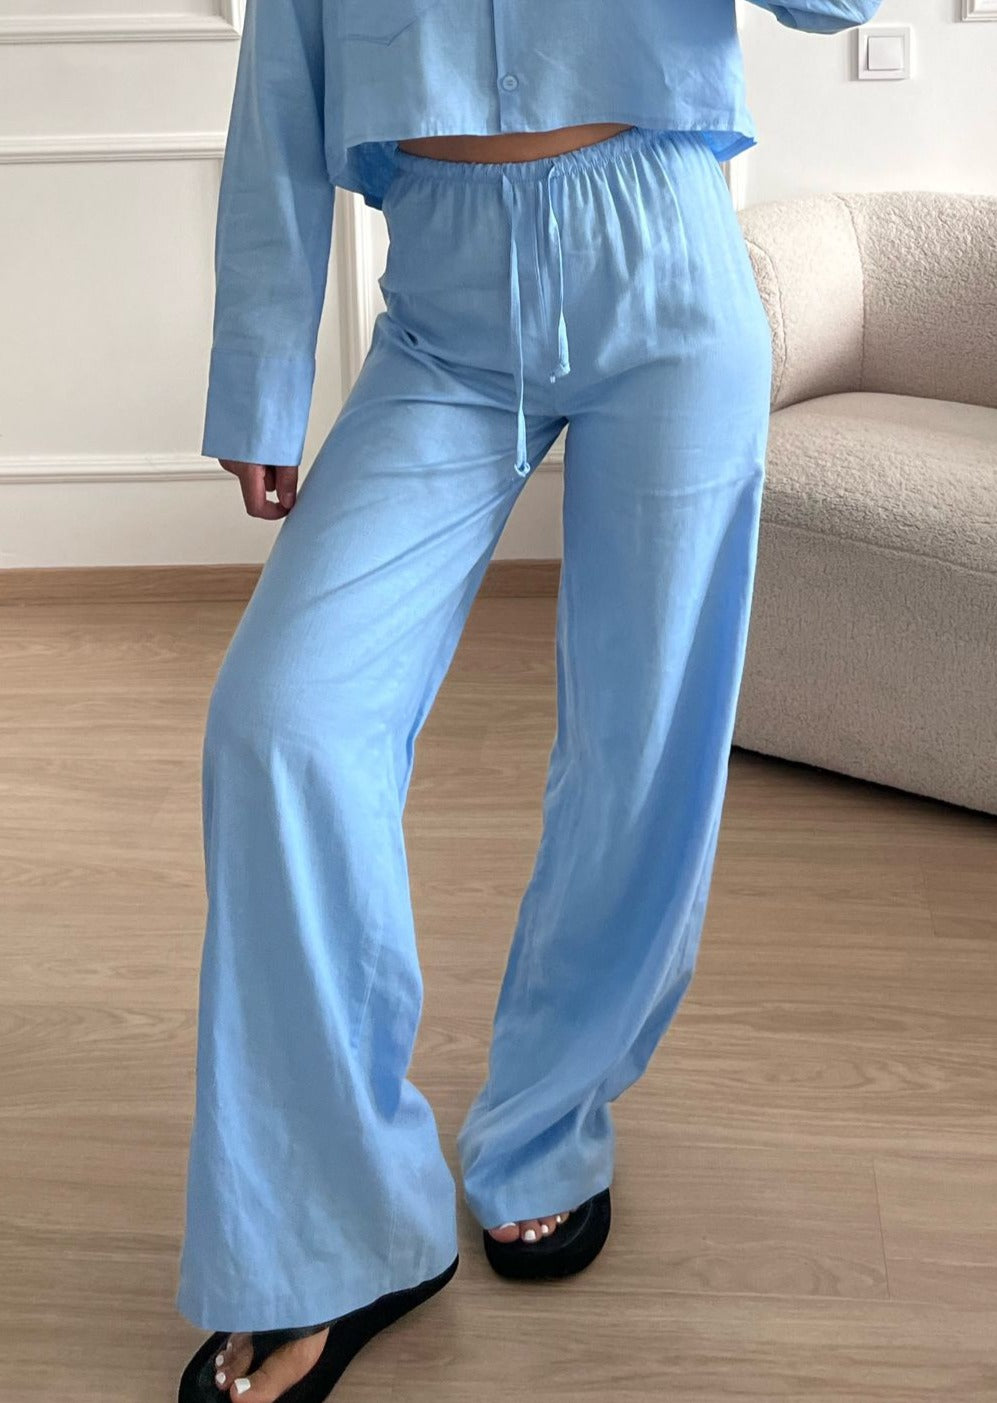 Linen pants small waist band light blue (REGULAR)